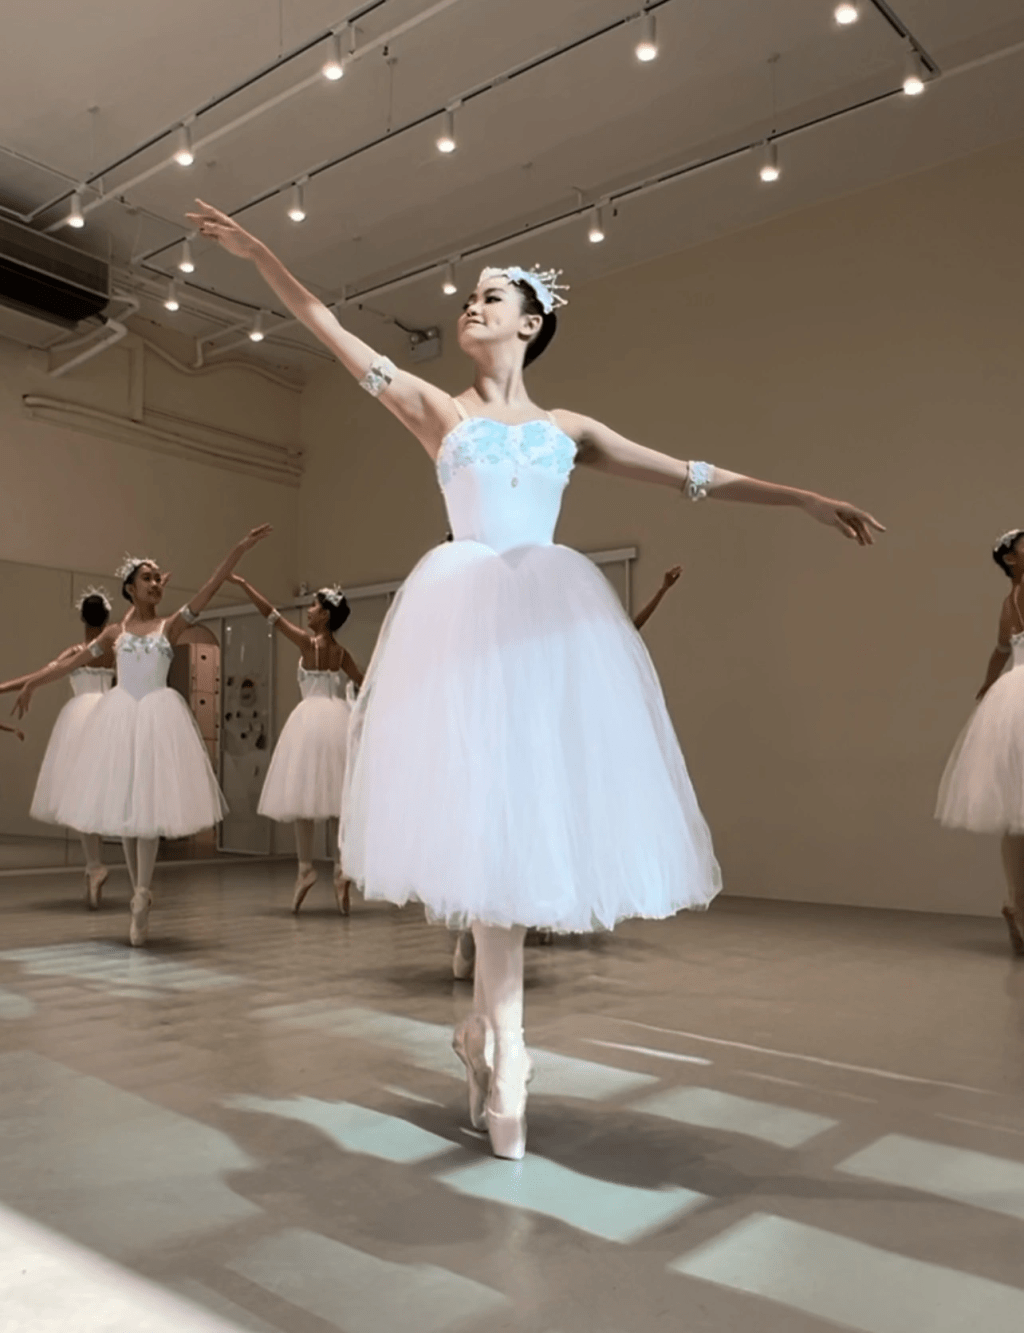 白色芭蕾舞裝束好有仙氣。